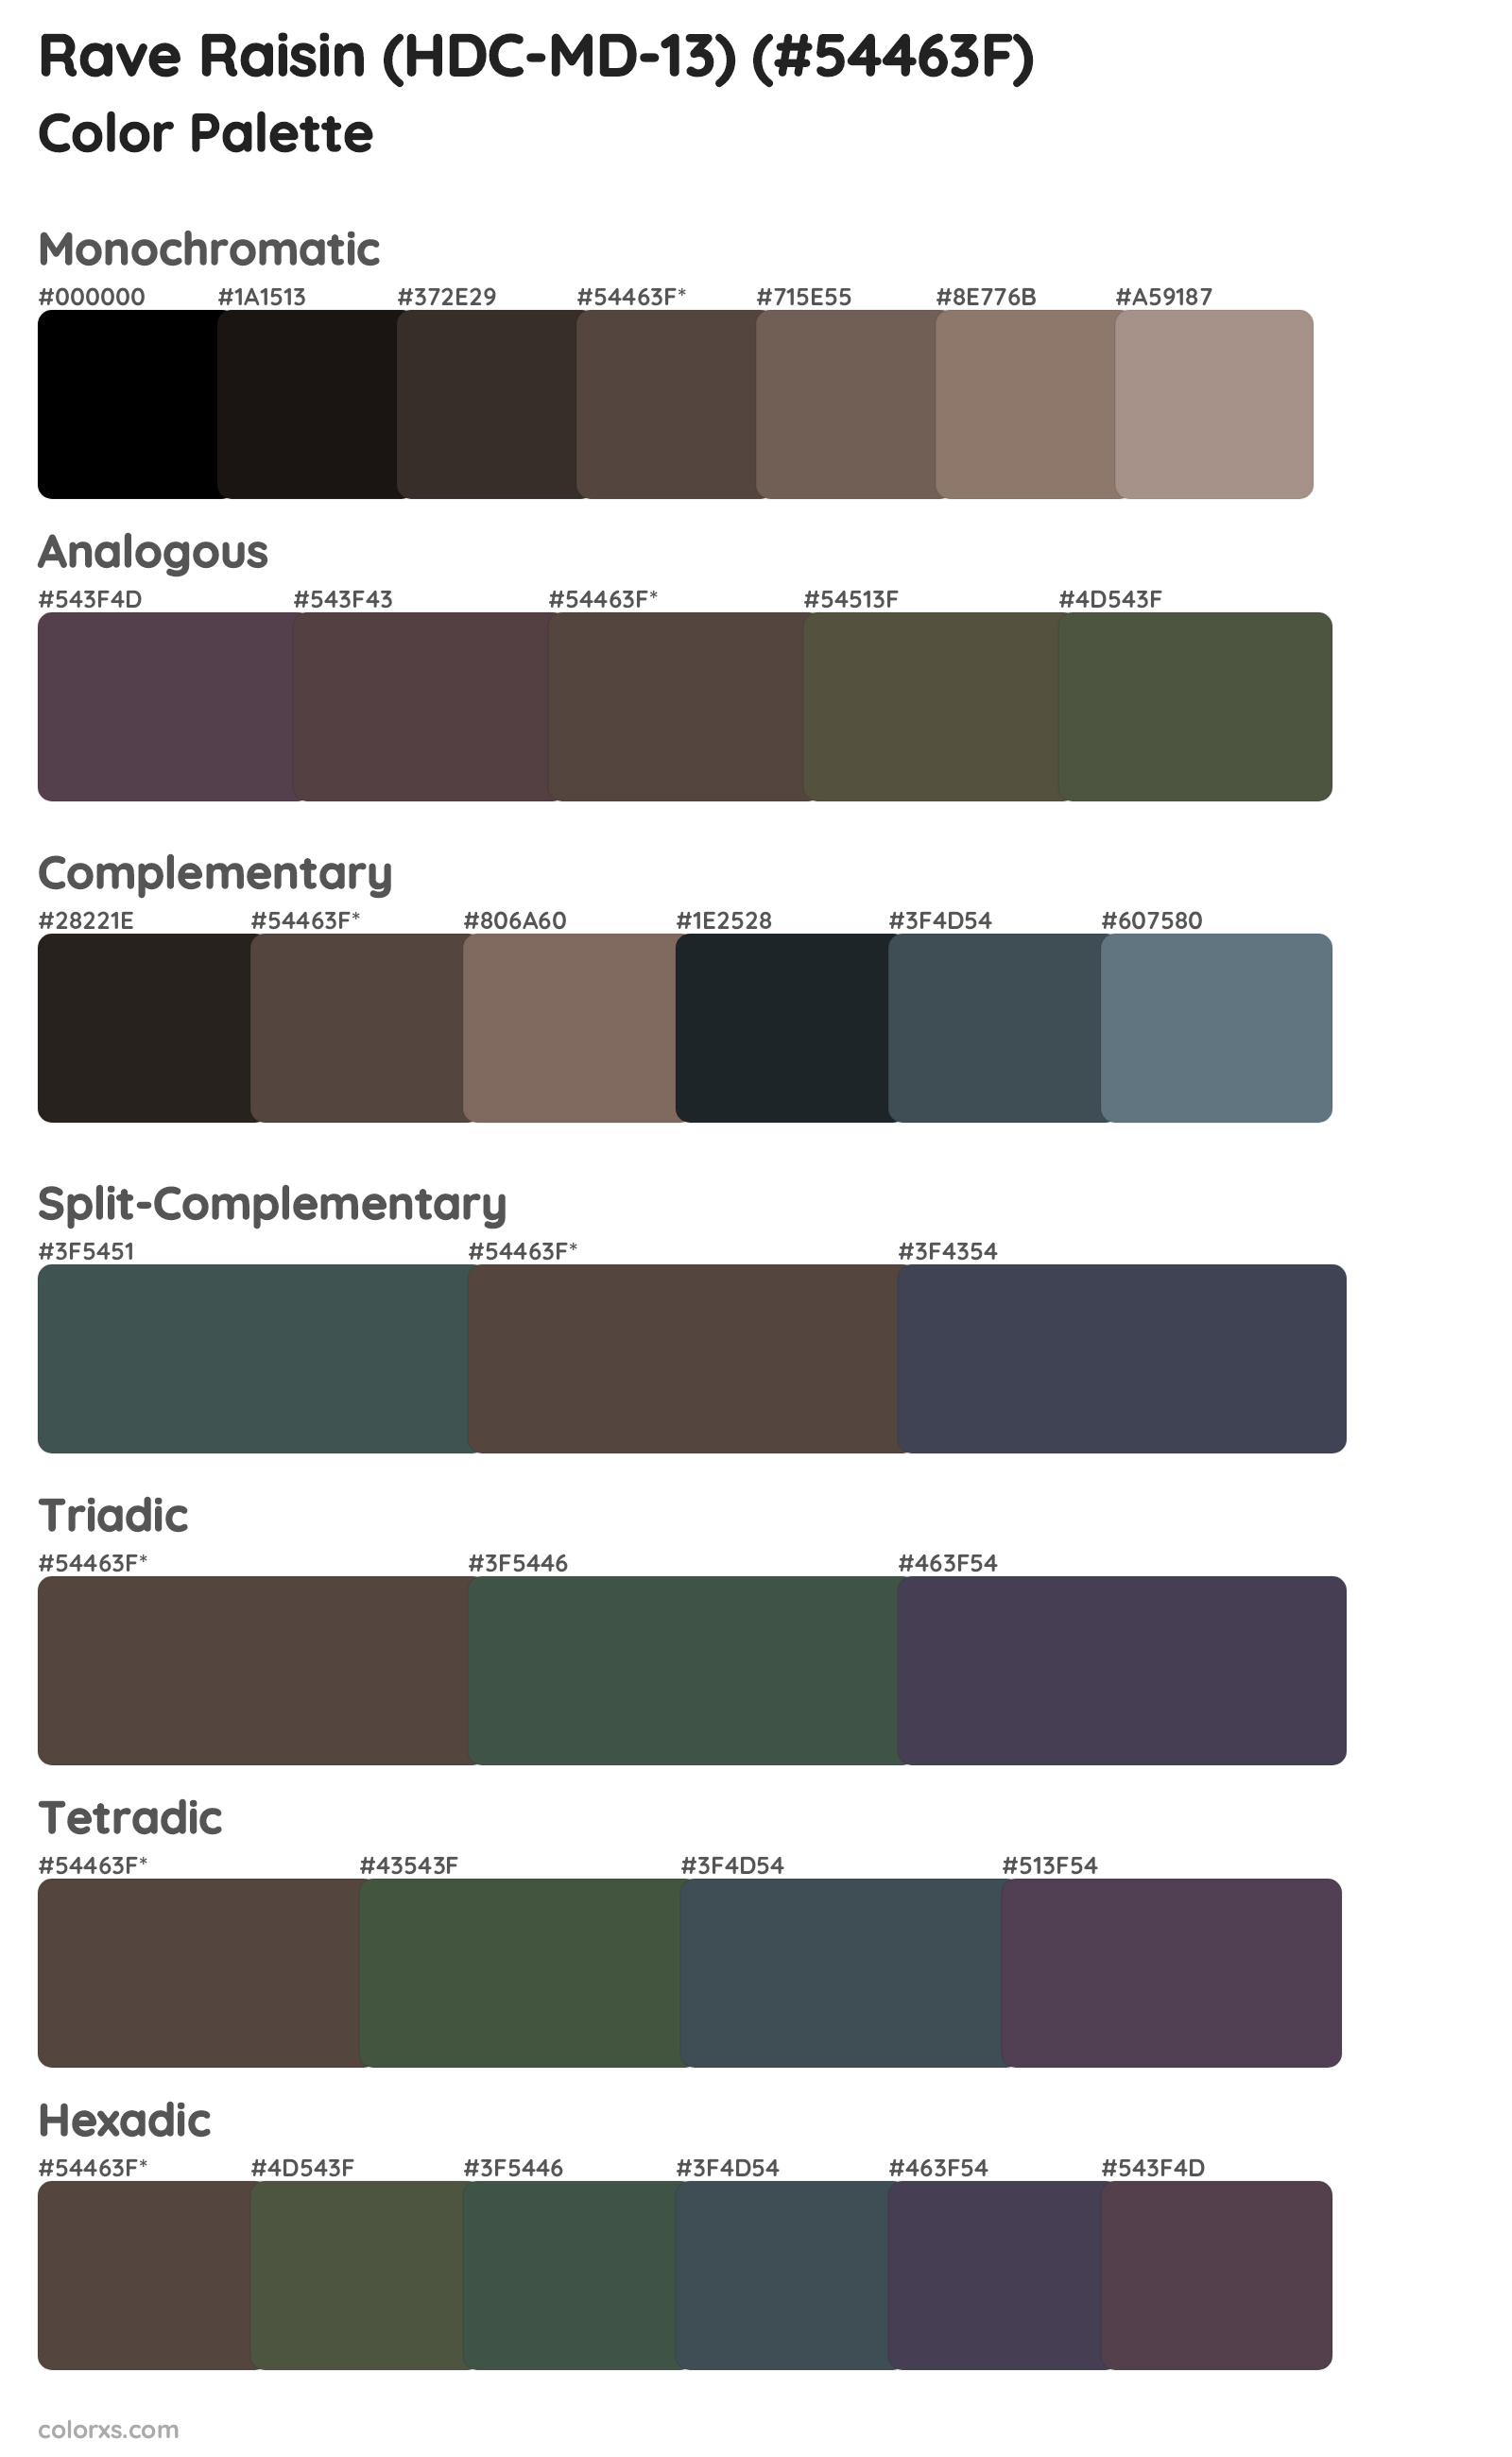 Rave Raisin (HDC-MD-13) Color Scheme Palettes